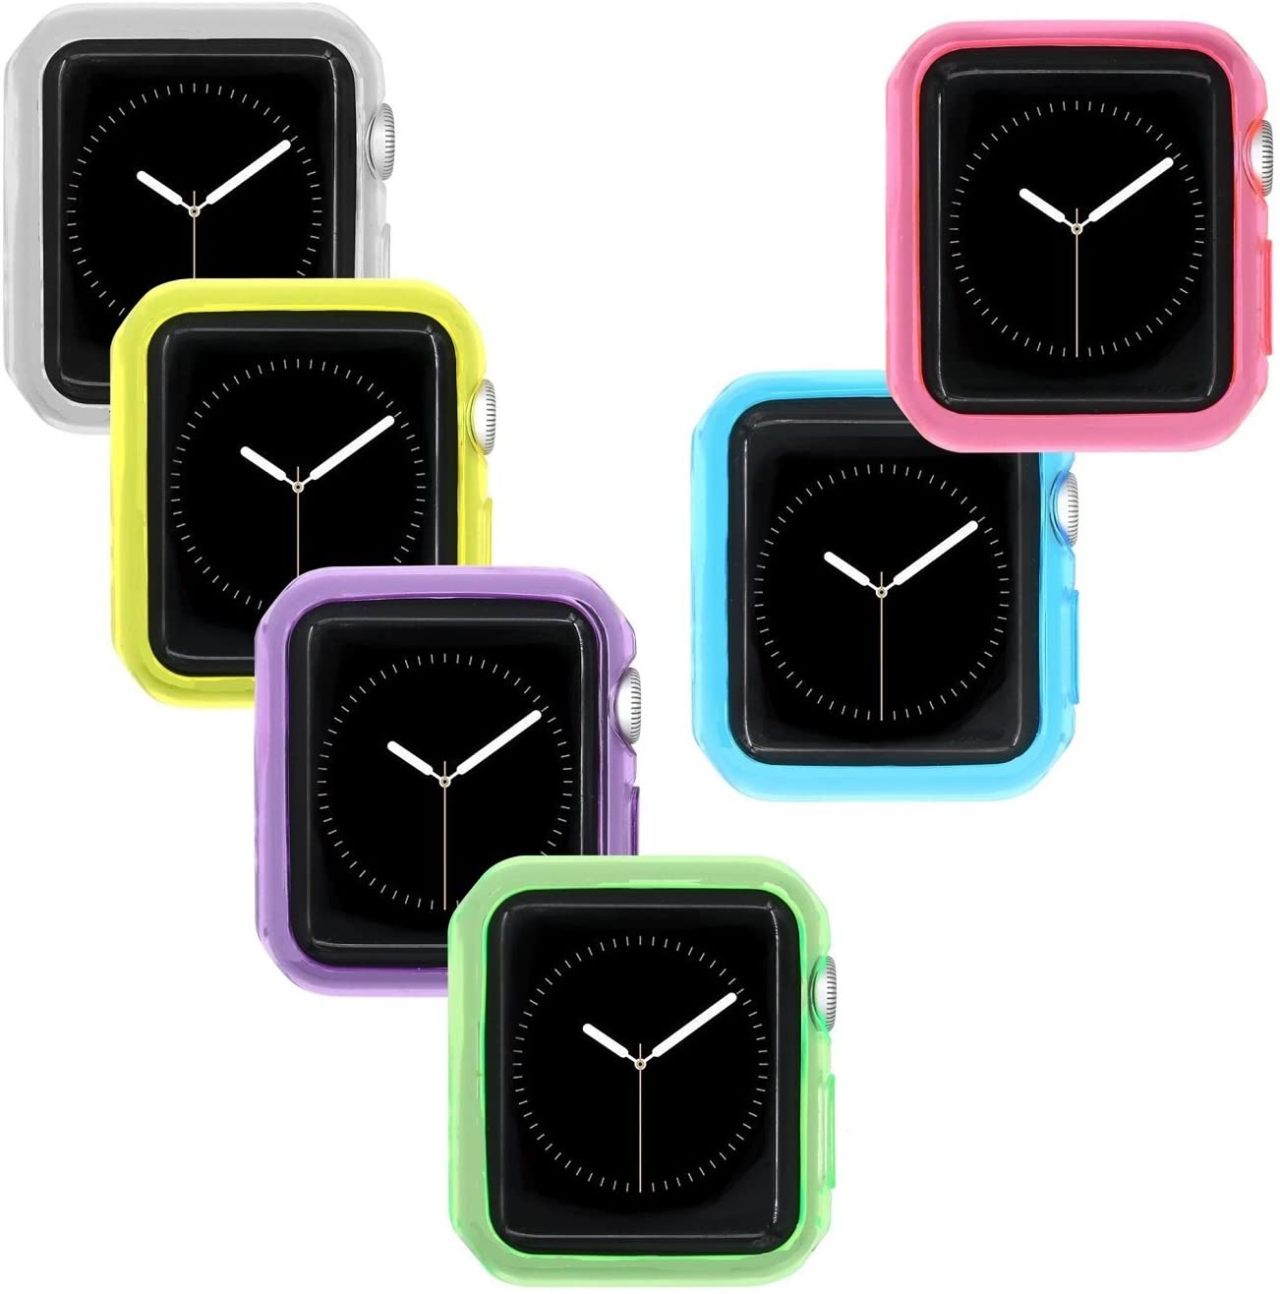 Apple Watch Series 6: Bổ sung nhiều tính năng hơn về chăm sóc sức khỏe đặc biệt là tính năng đo nồng độ oxy trong máu!